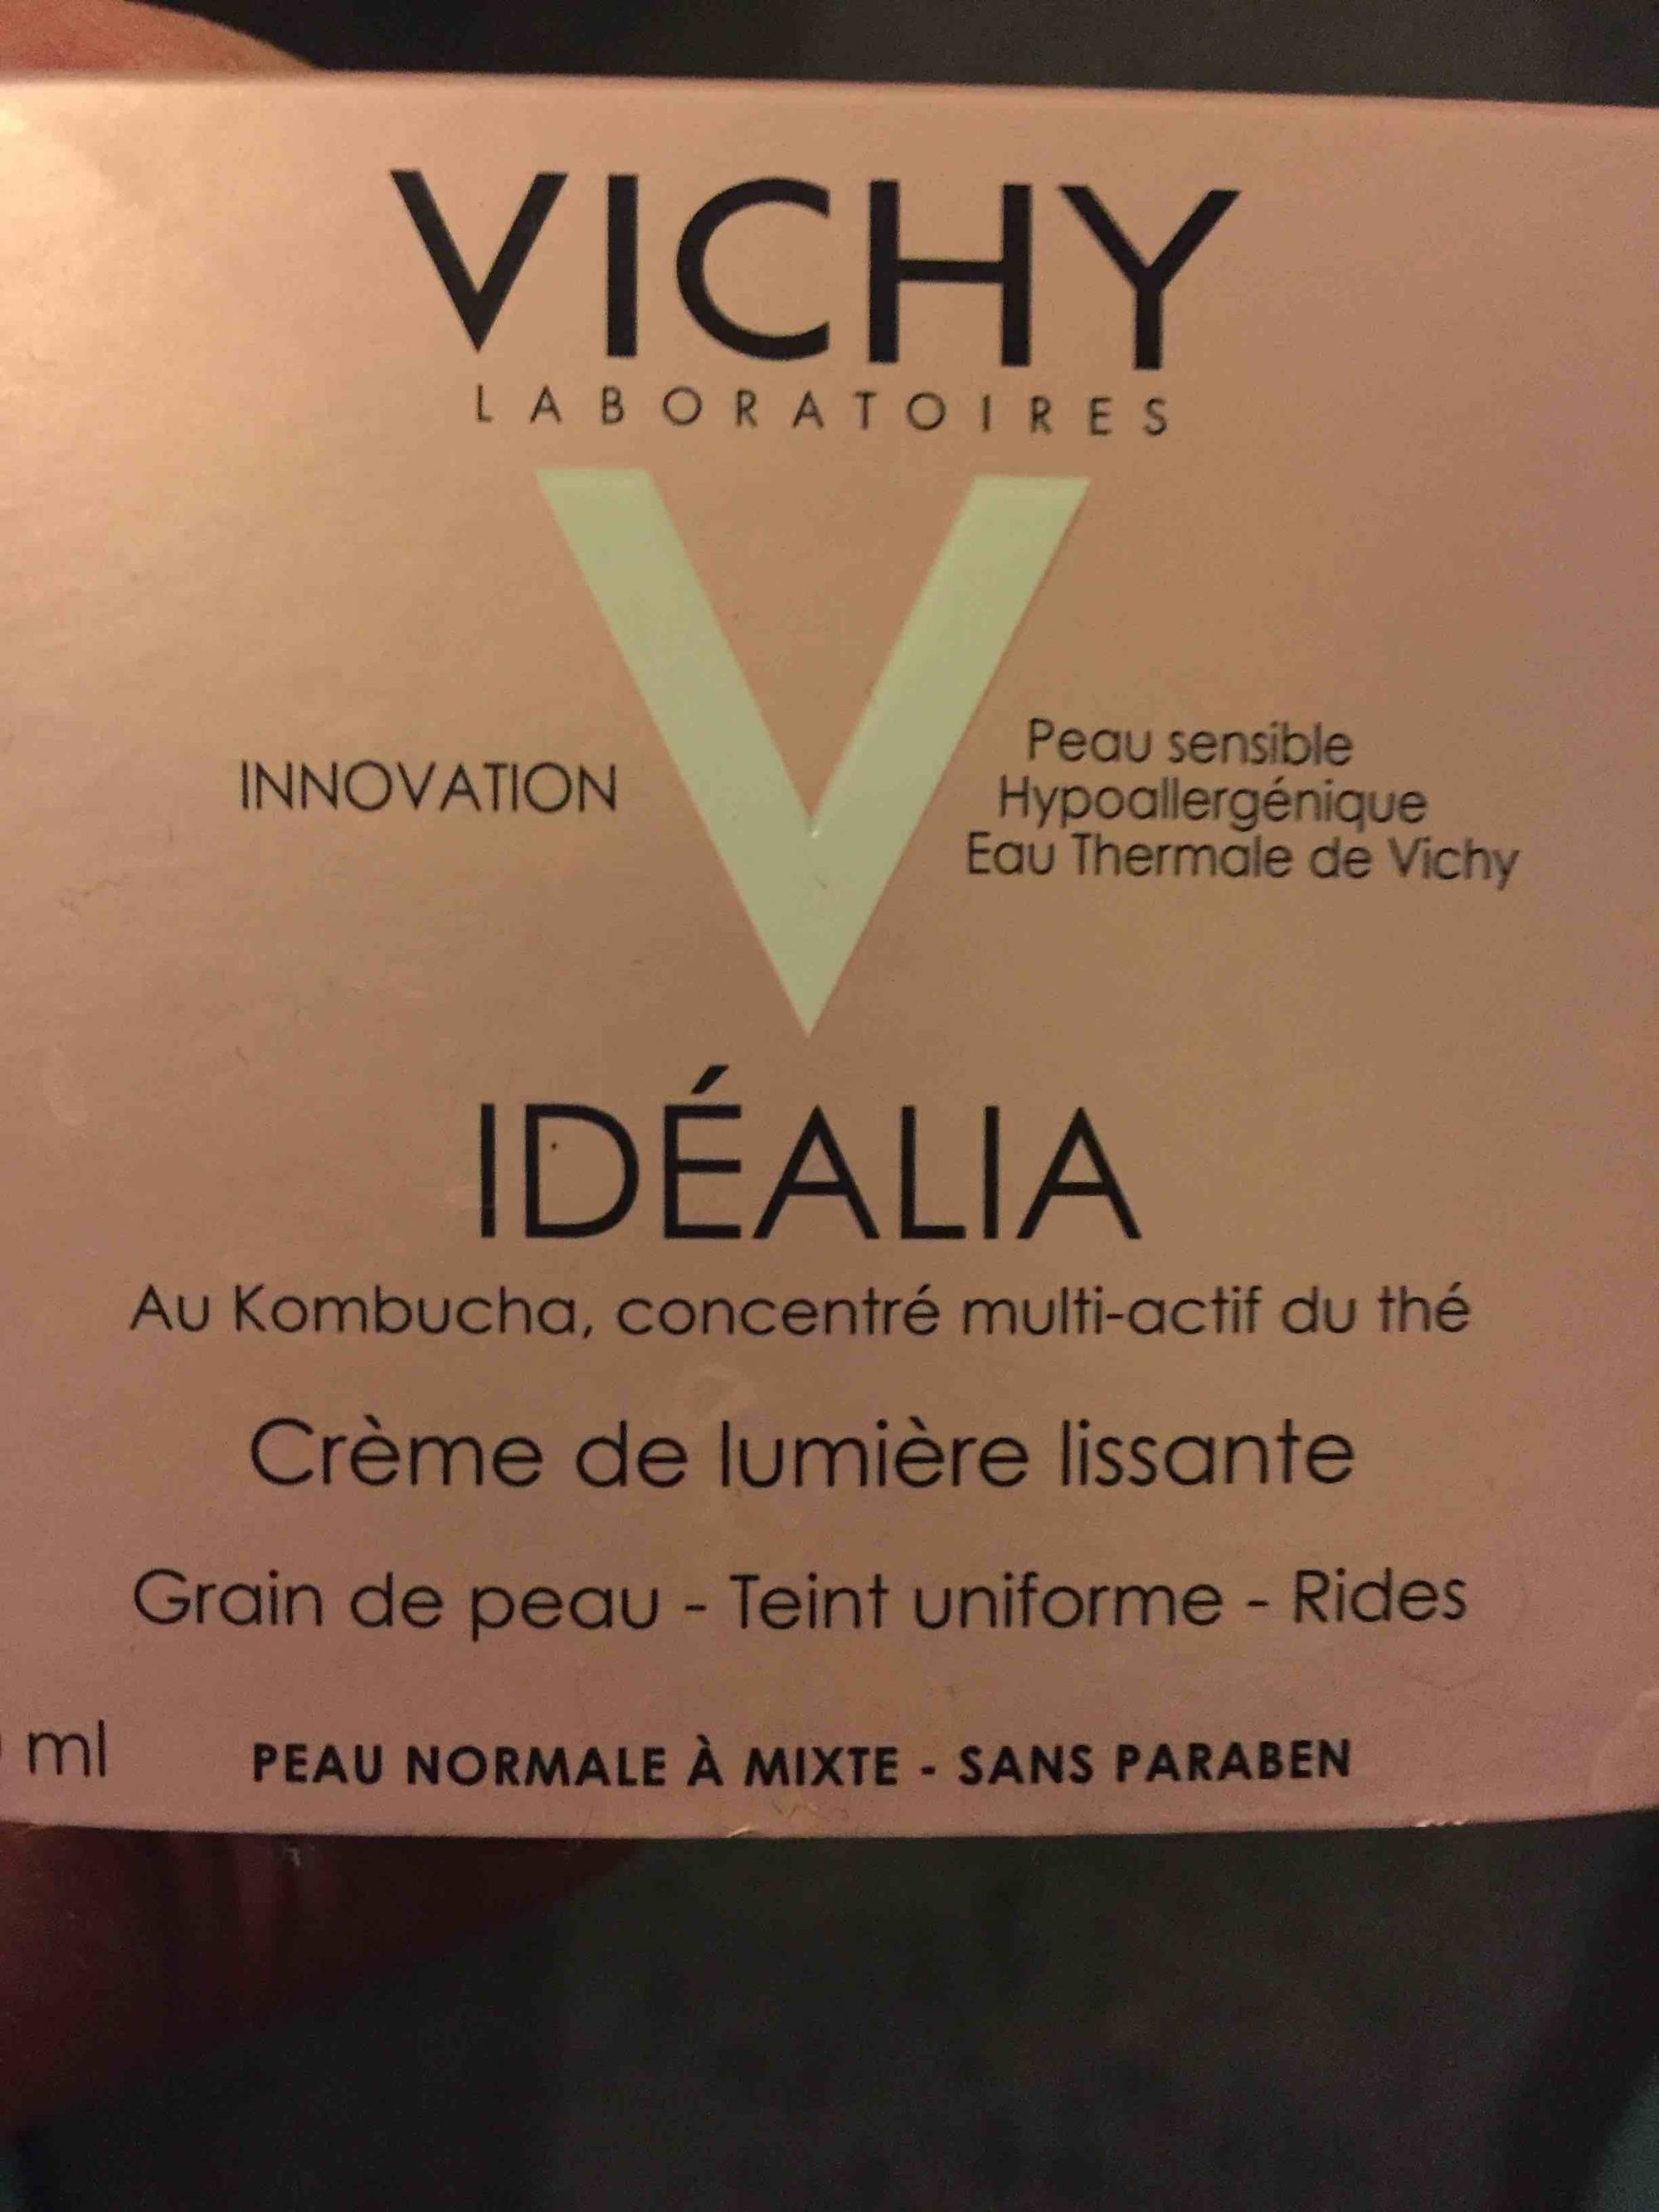 VICHY - Idéalia - Crème de lumière lissante